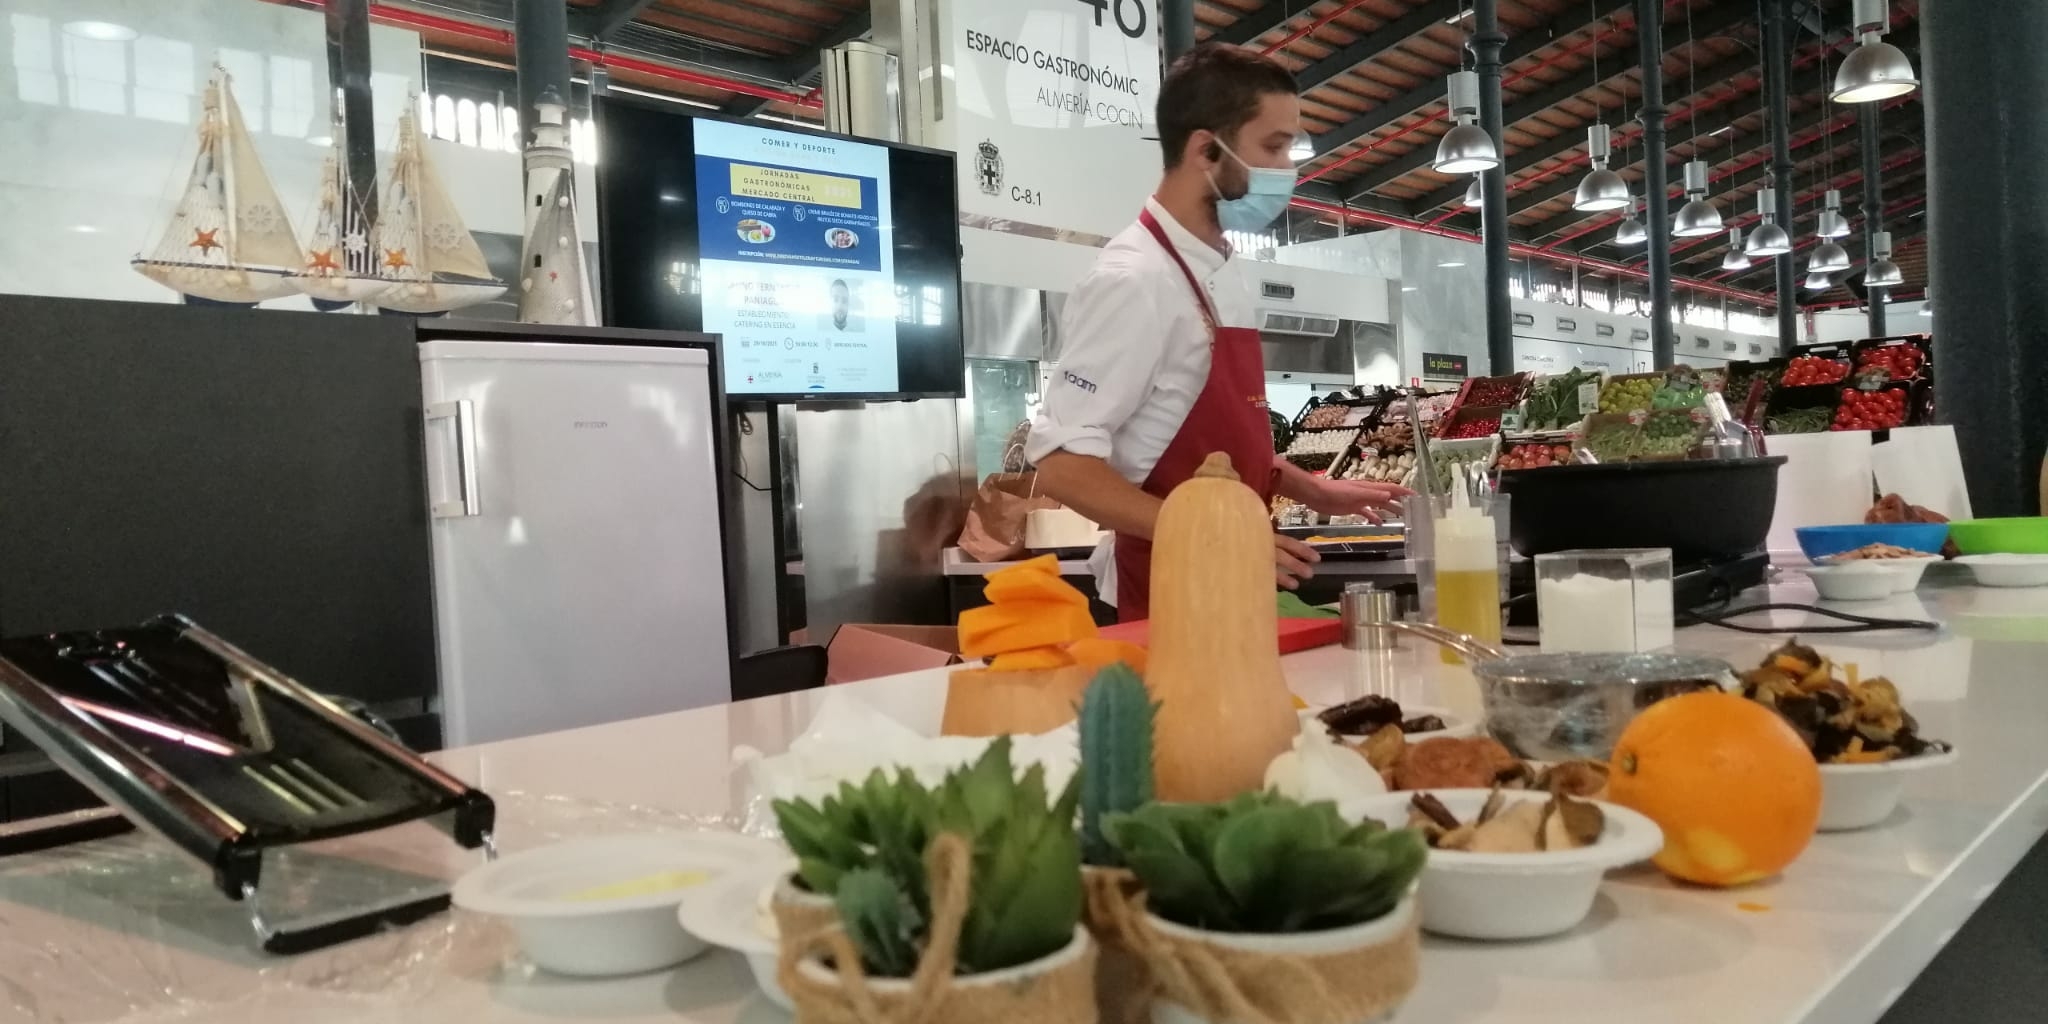 Jornada Gastronómica Comer y deporte 2 uai - Turismo Almería